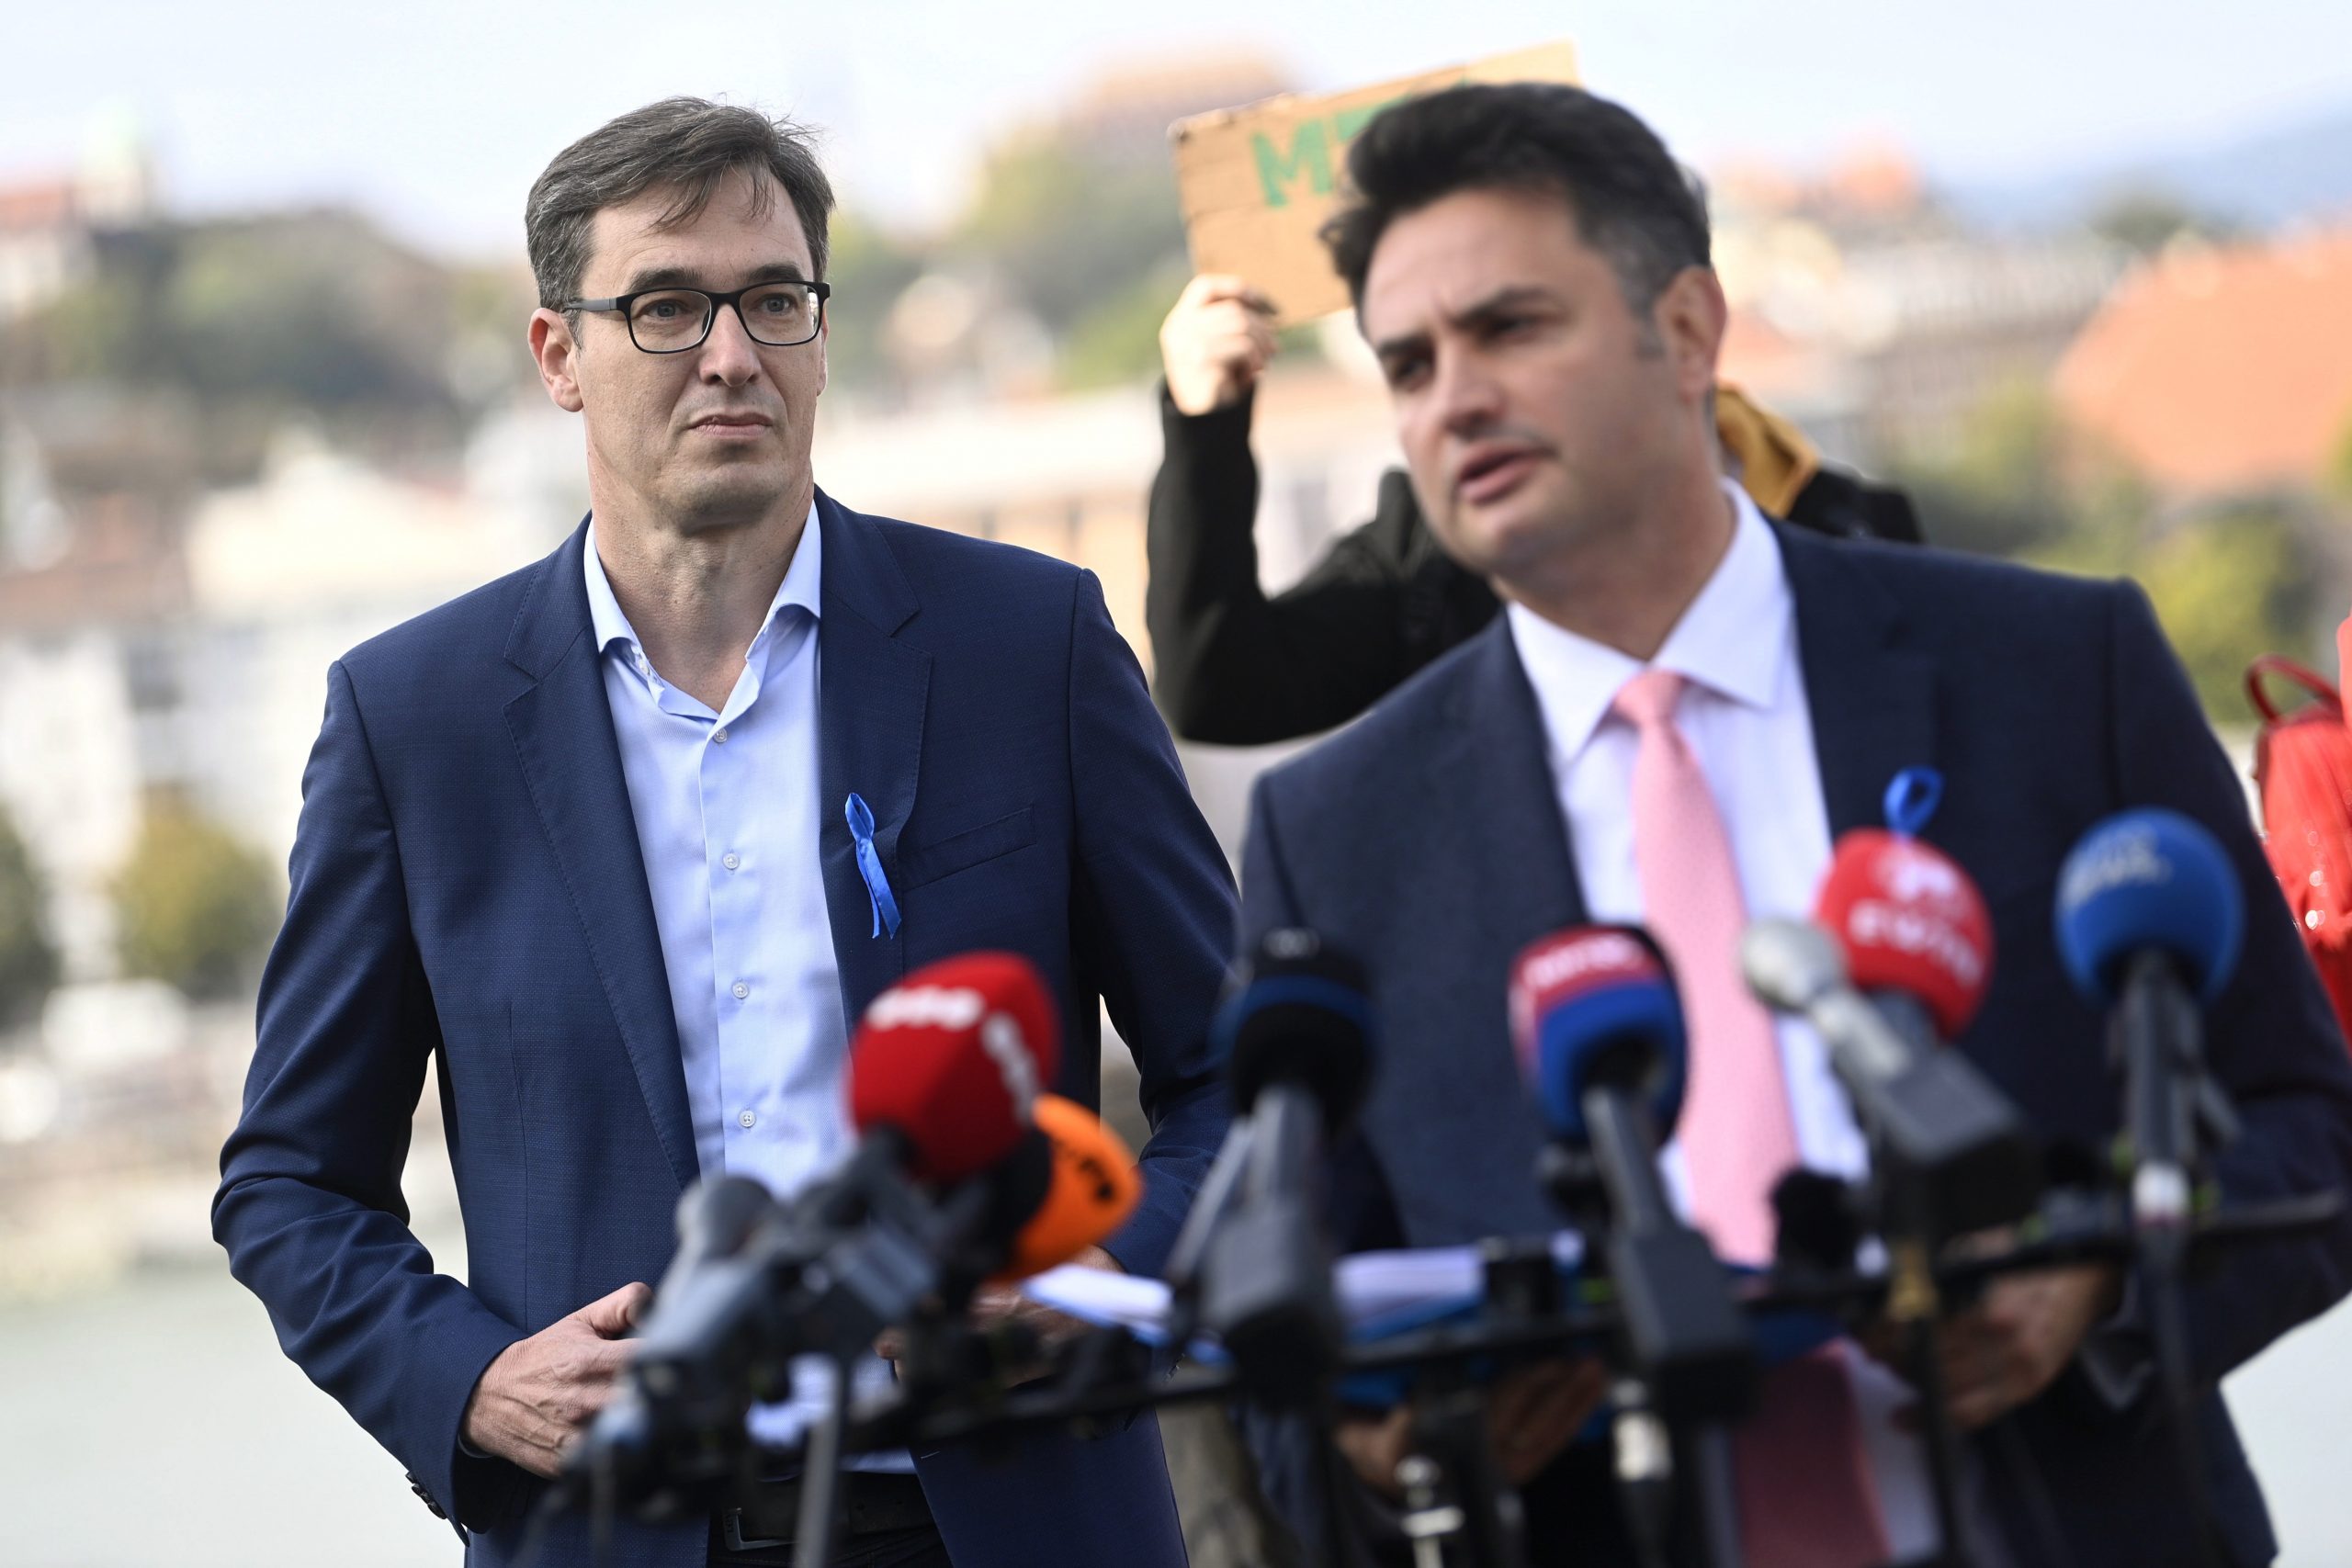 Budapost: Oppositionskritische Stimmen zum Vorwahlergebnis